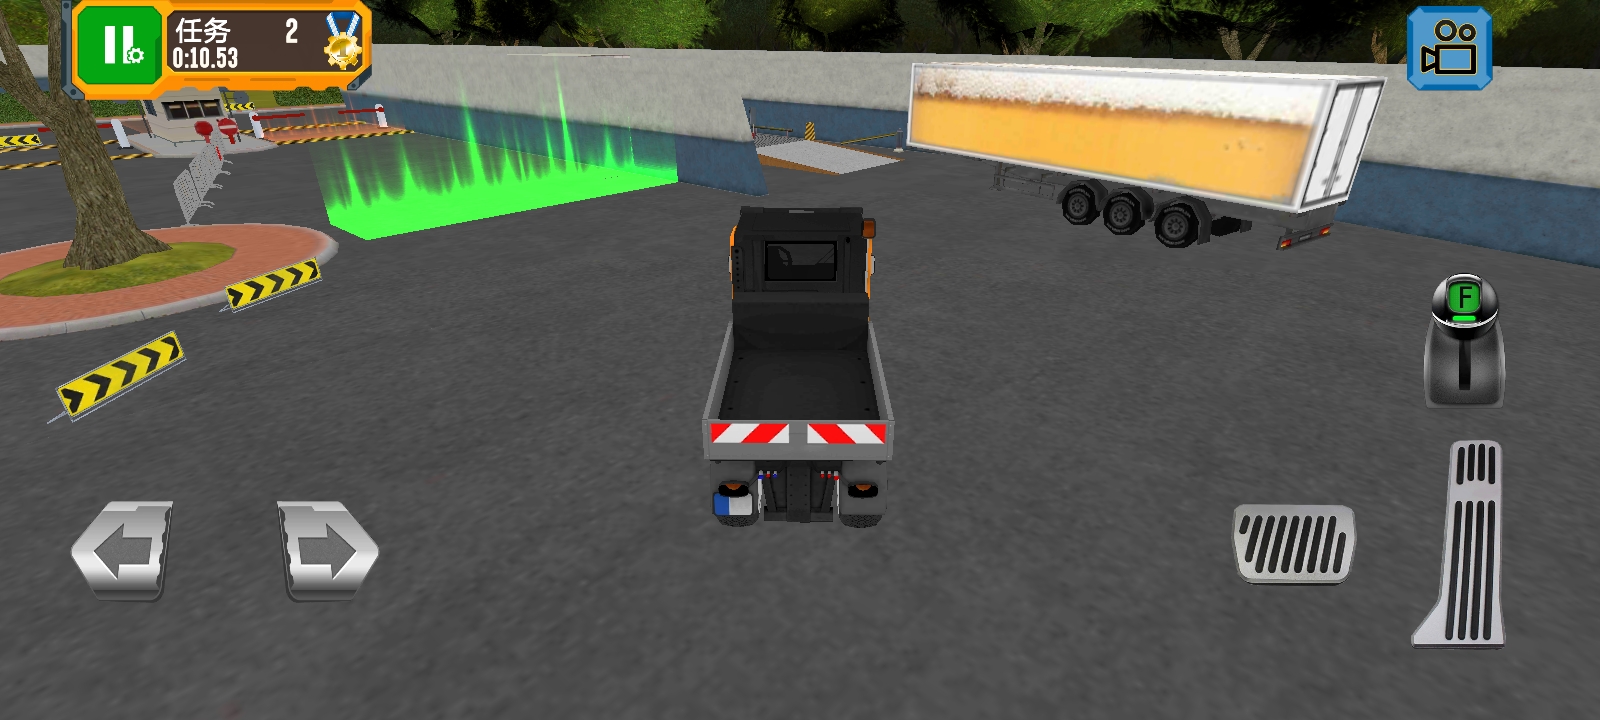 汽车驾驶训练模拟器安卓版 V1.0